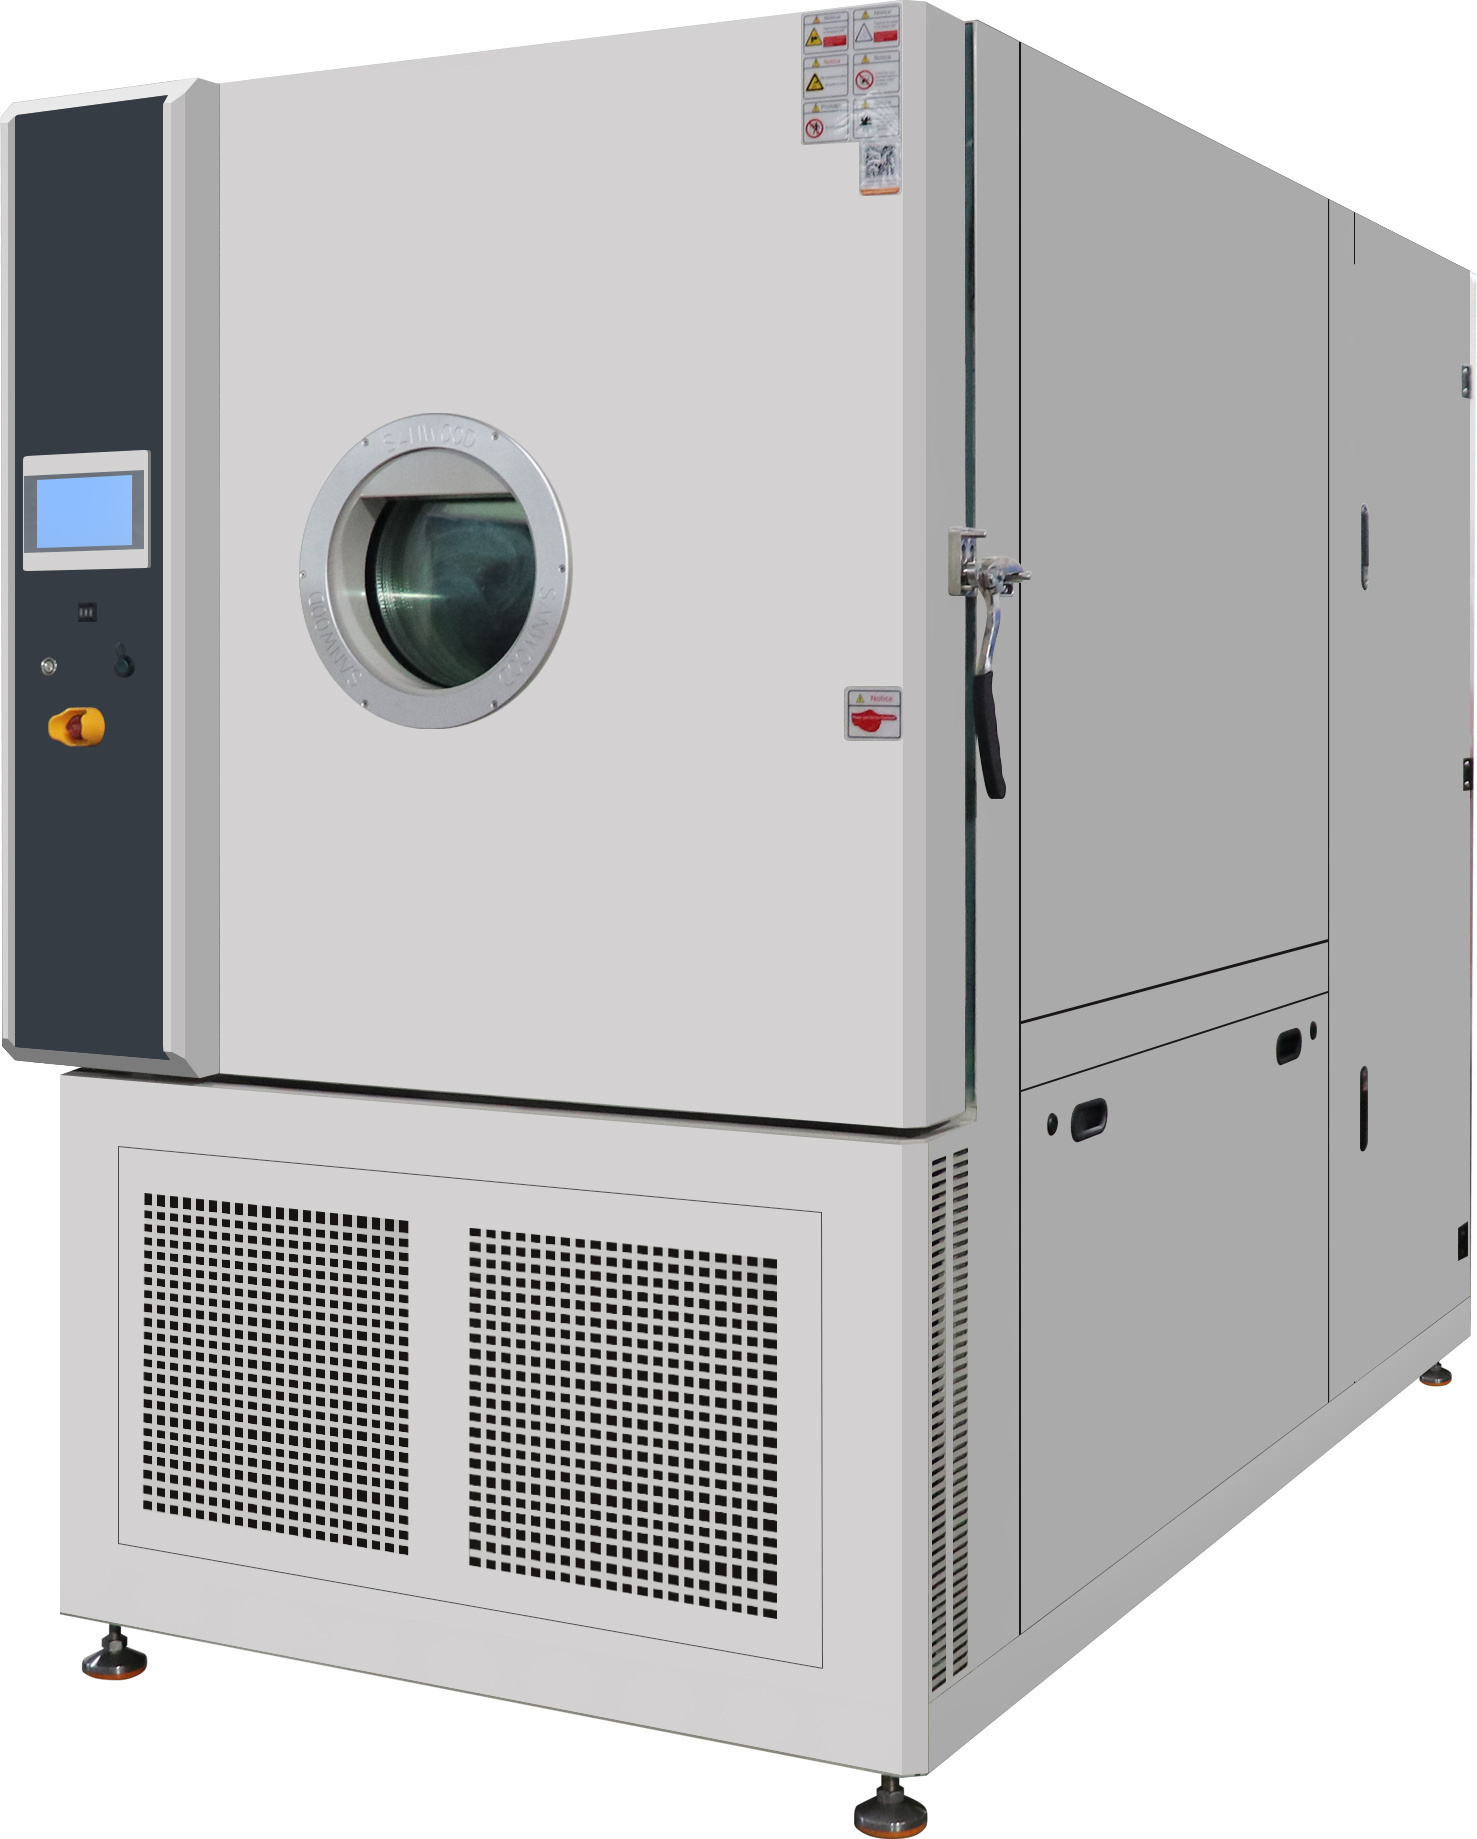 高低温试验箱英文高低温试验箱公司杭州高低温试验箱